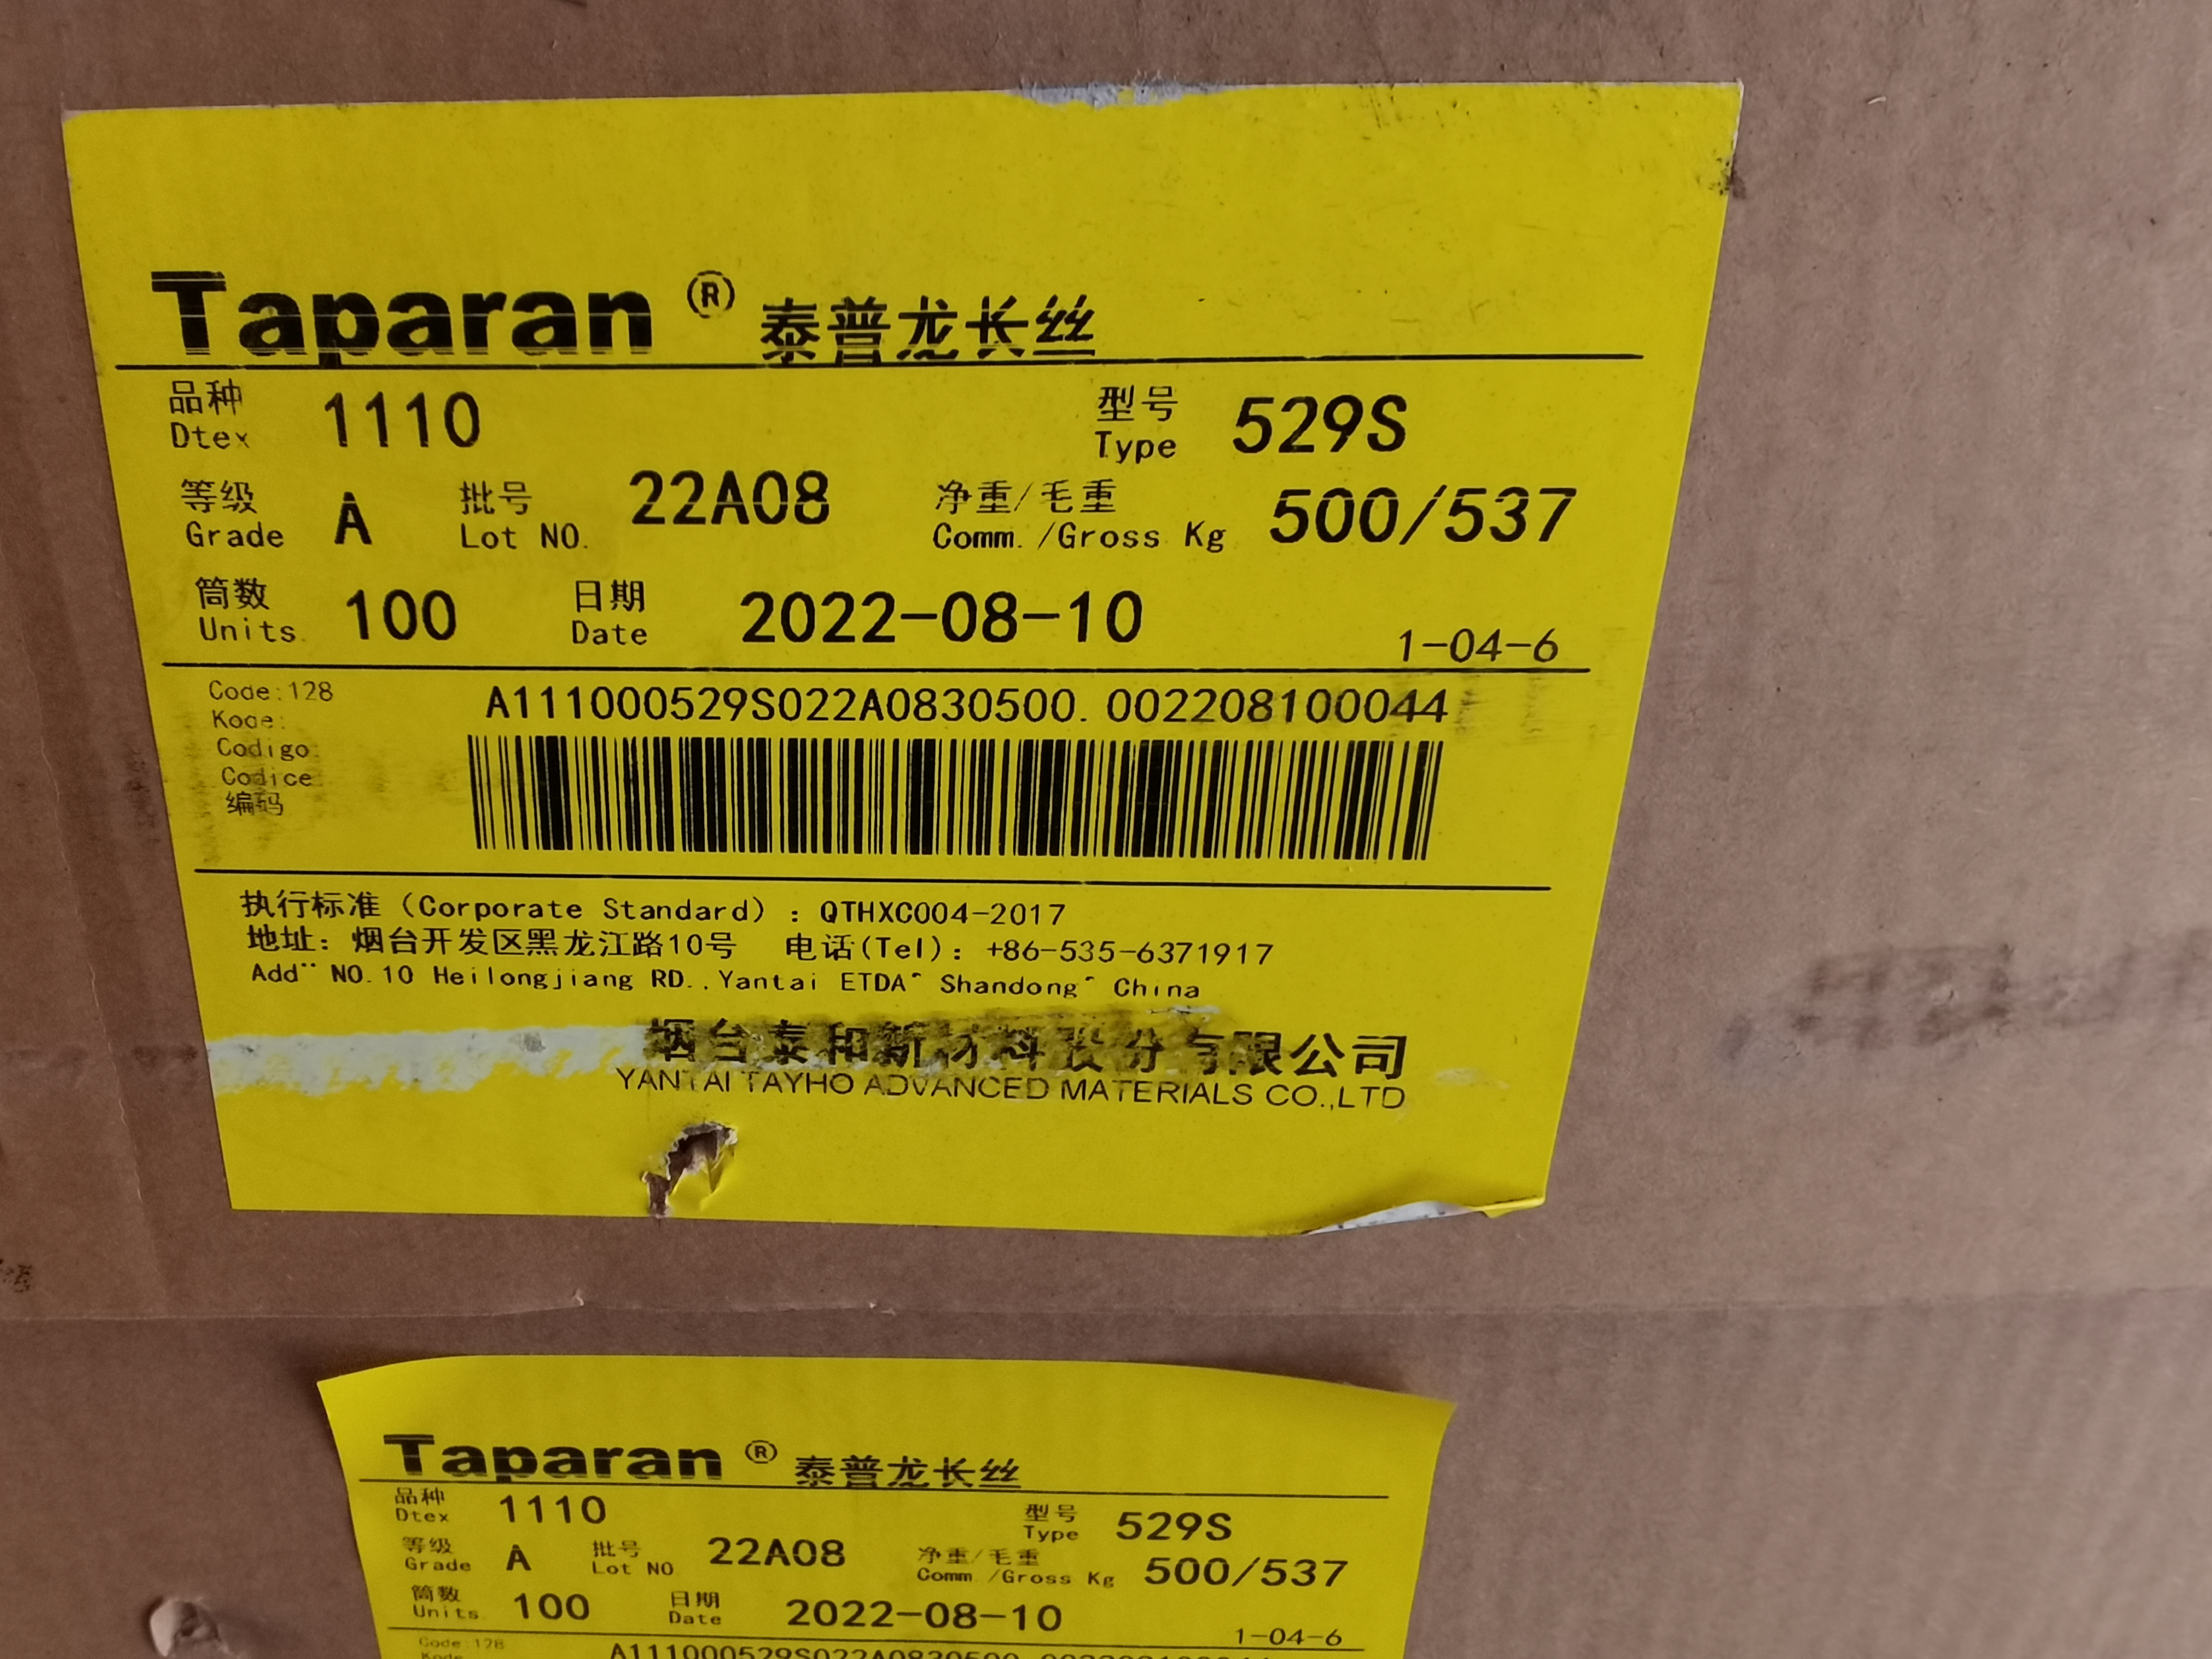 泰普龙芳纶纤维 彩色 Taparan 3000D(3300dtex)